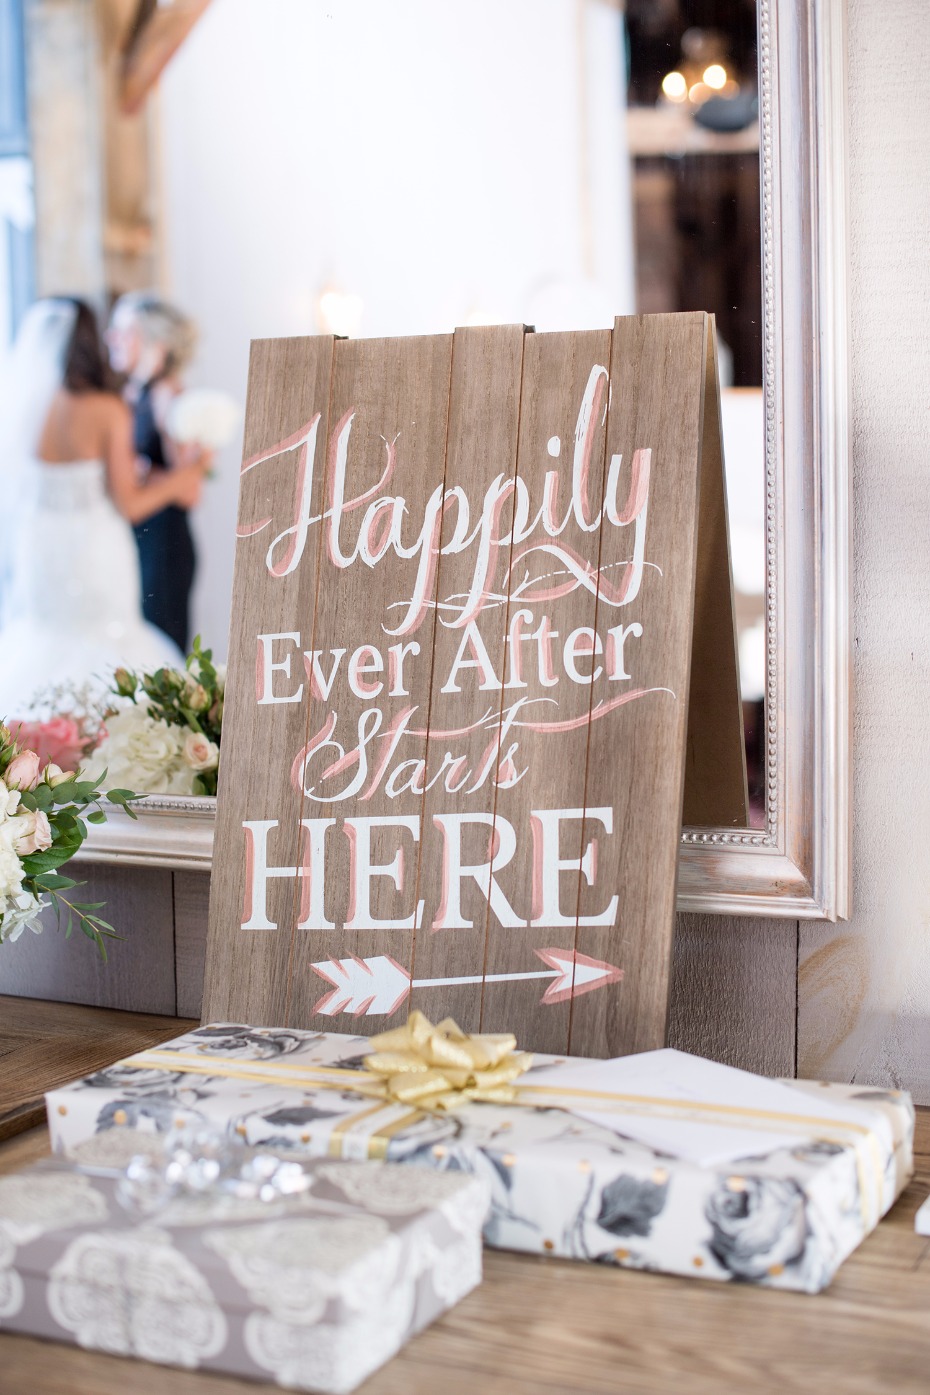 Cute wedding sign